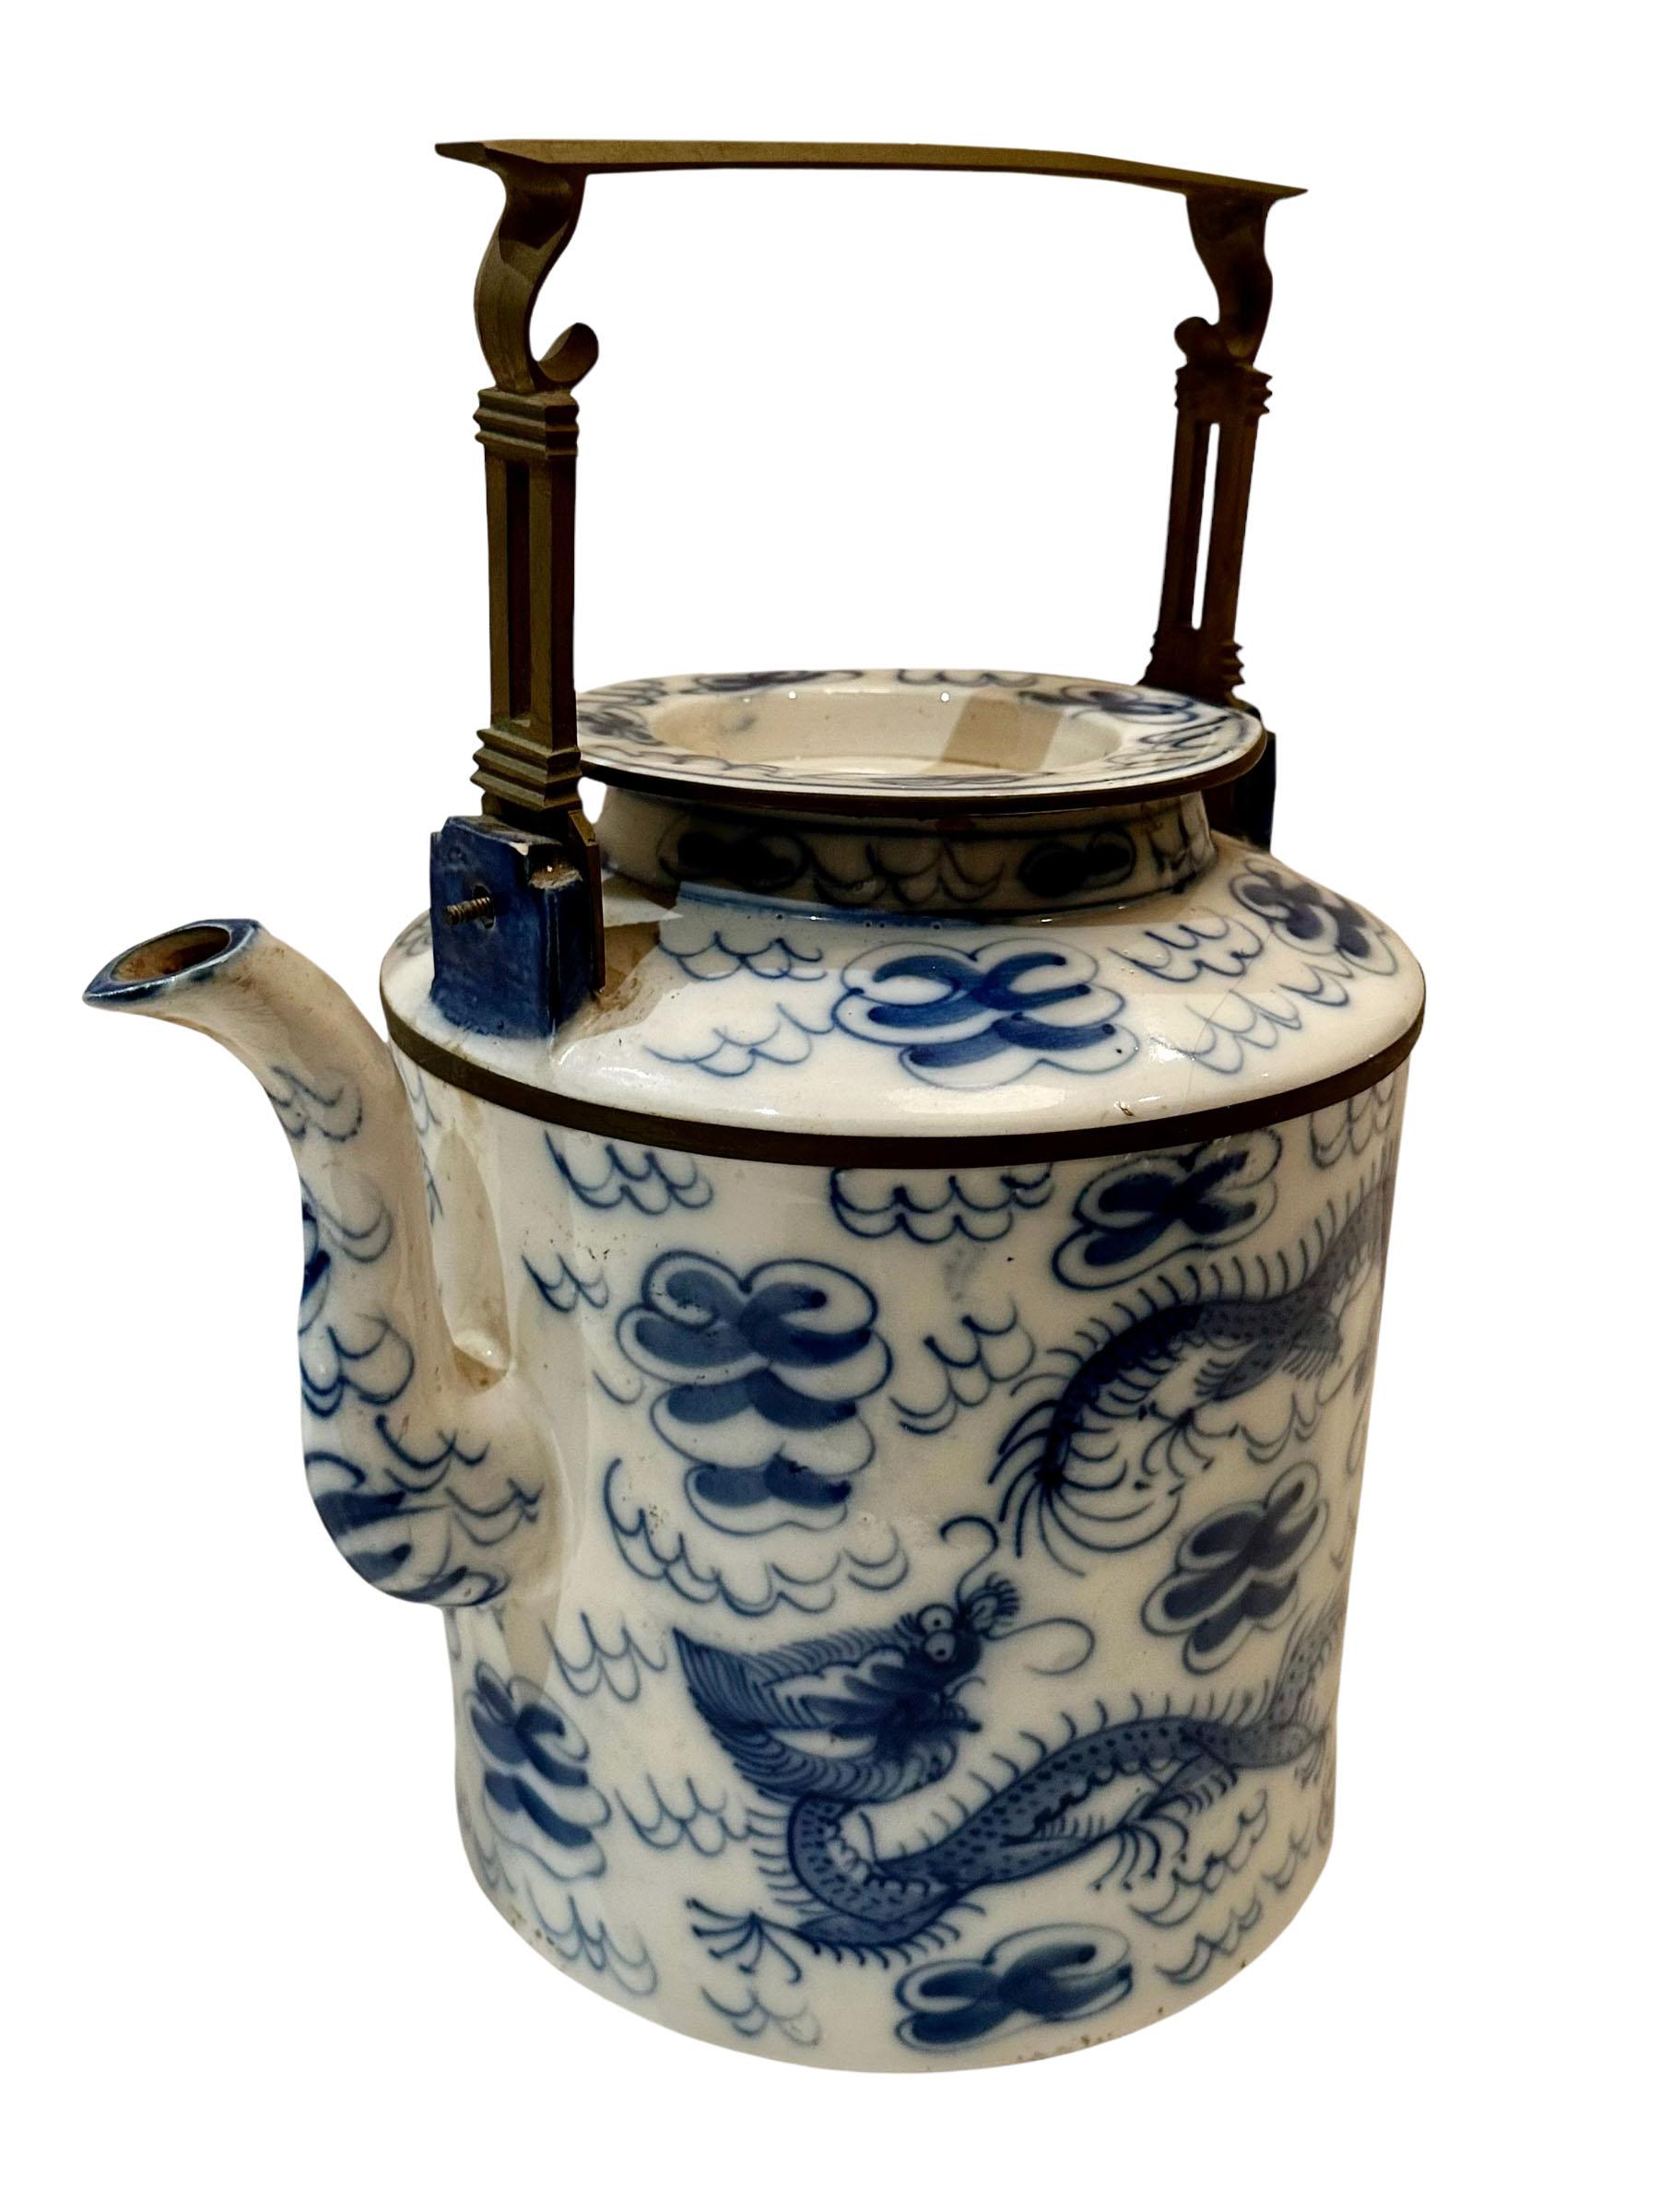 Eine chinesische Teekanne von hoher Qualität. Blau und weiß, mit Wolken- und Drachenmotiven. 
